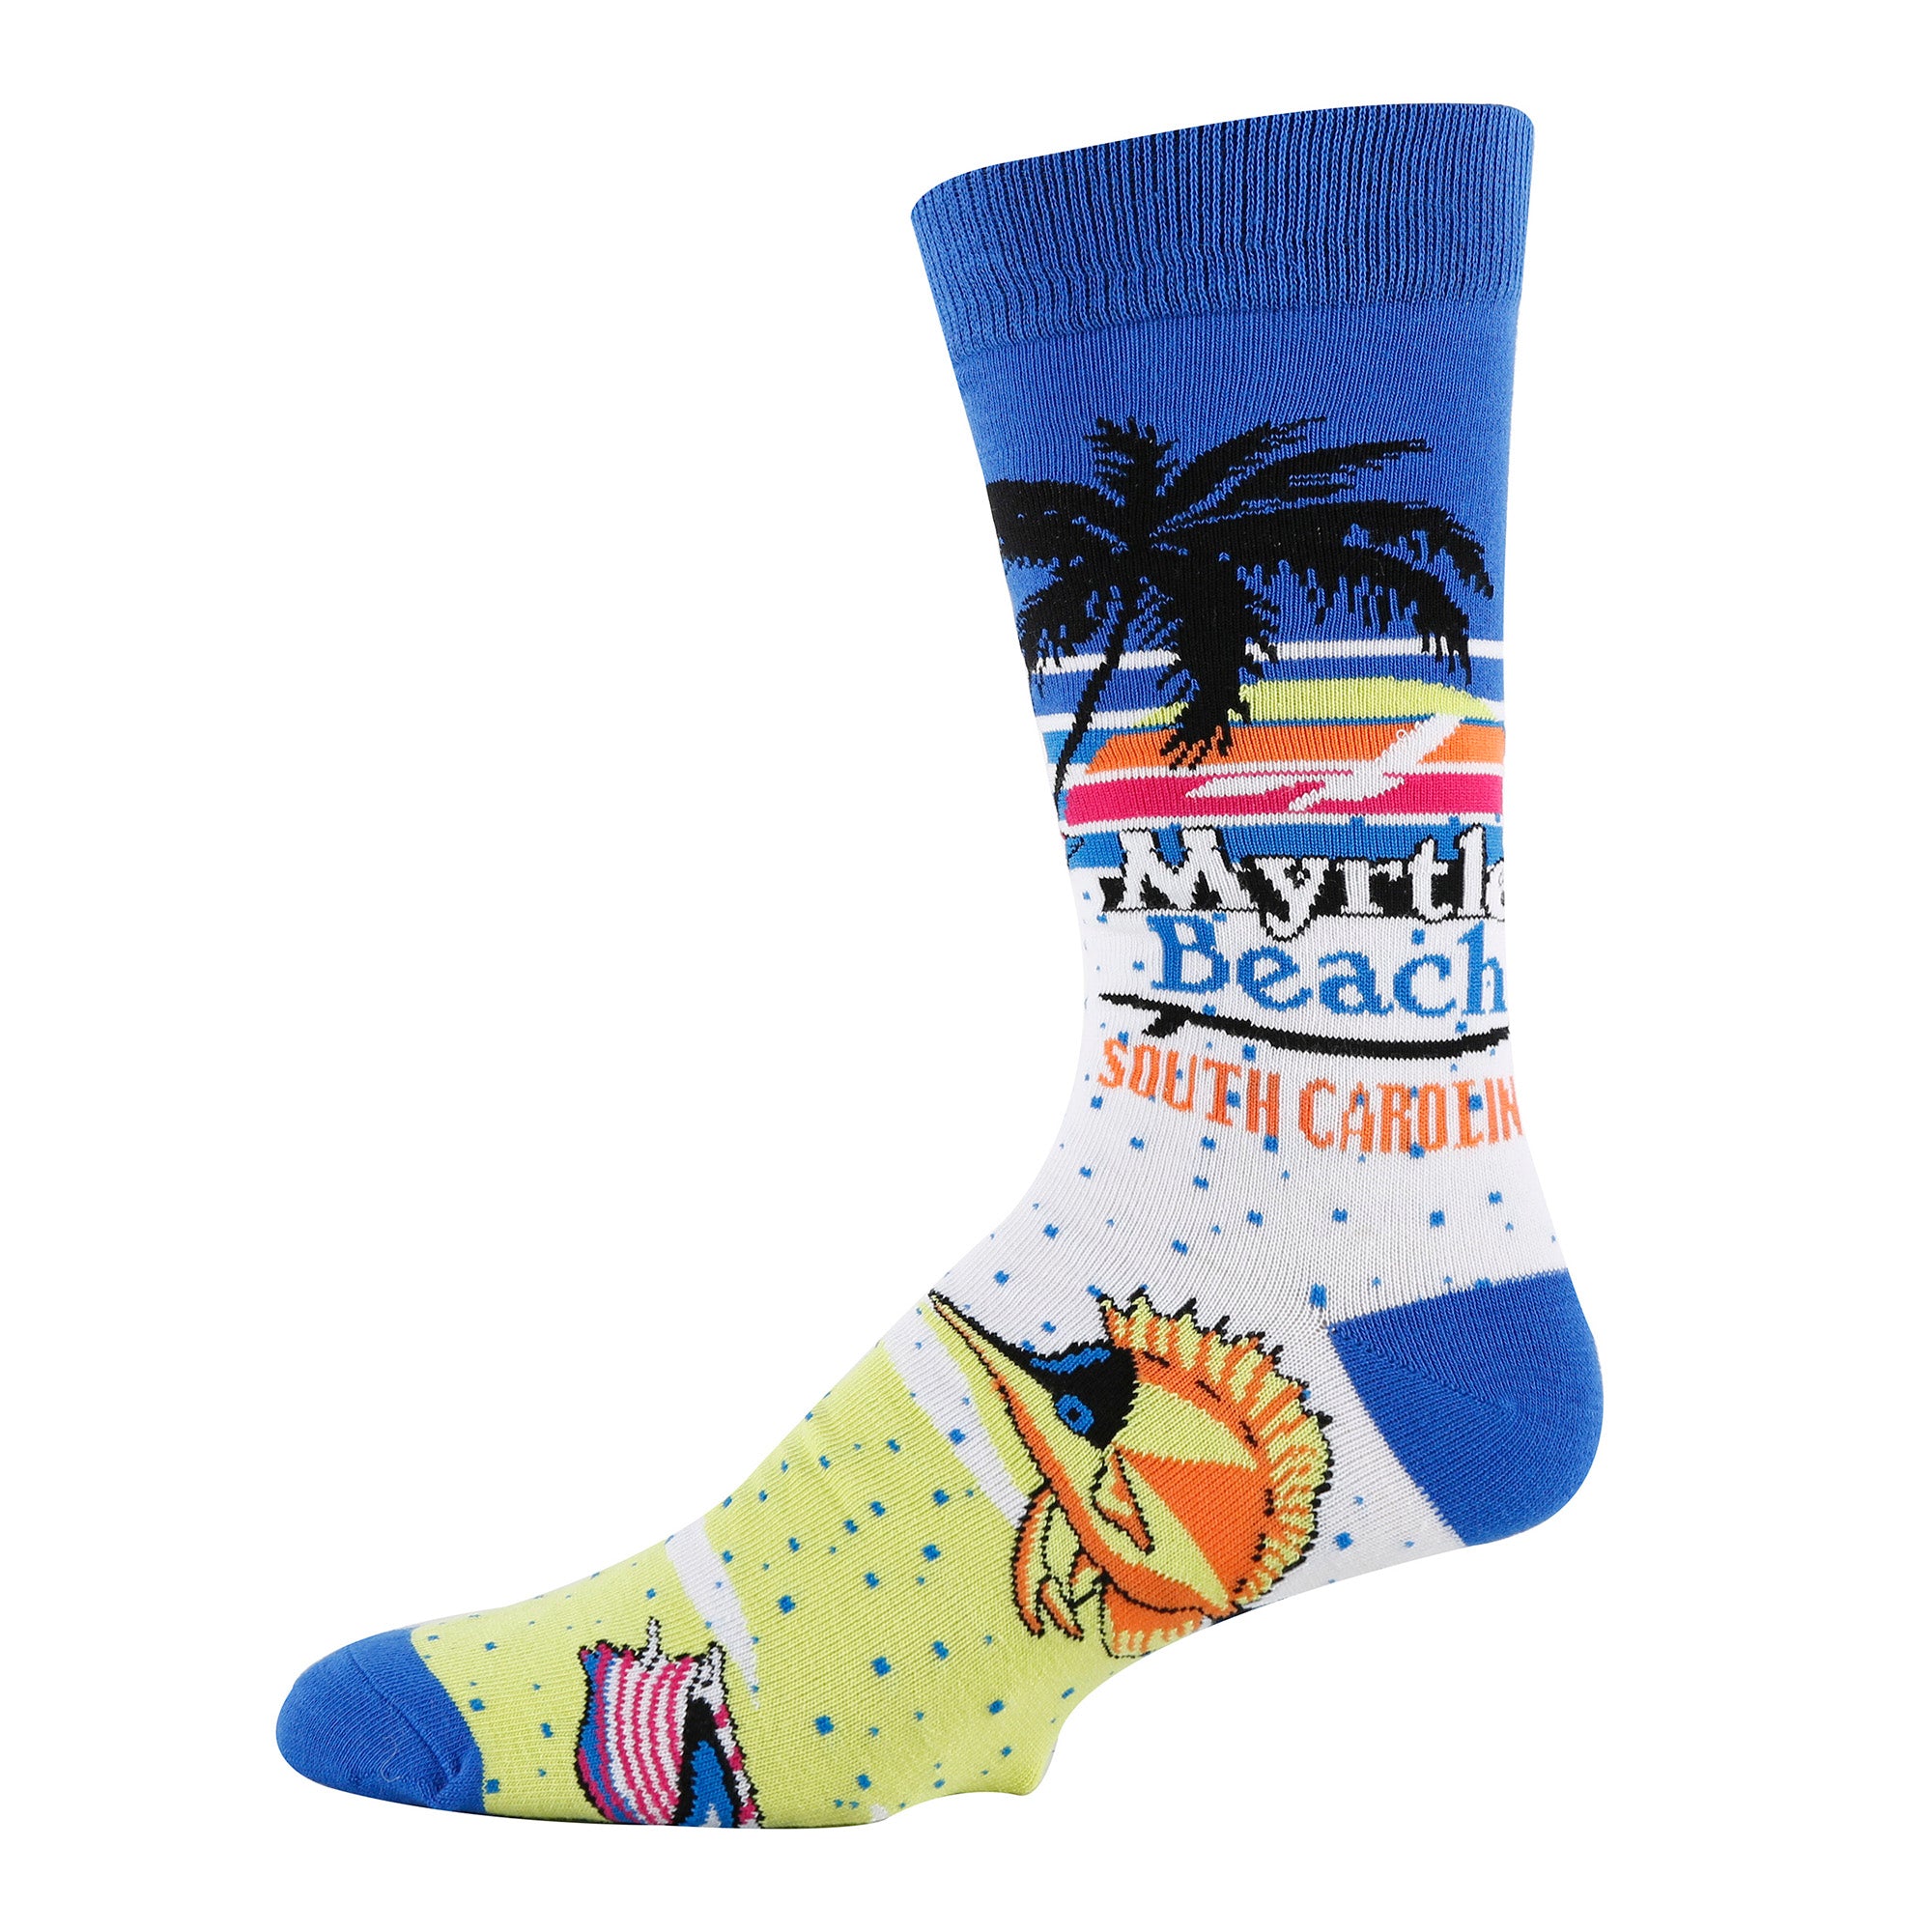 Myrtle Beach Socks